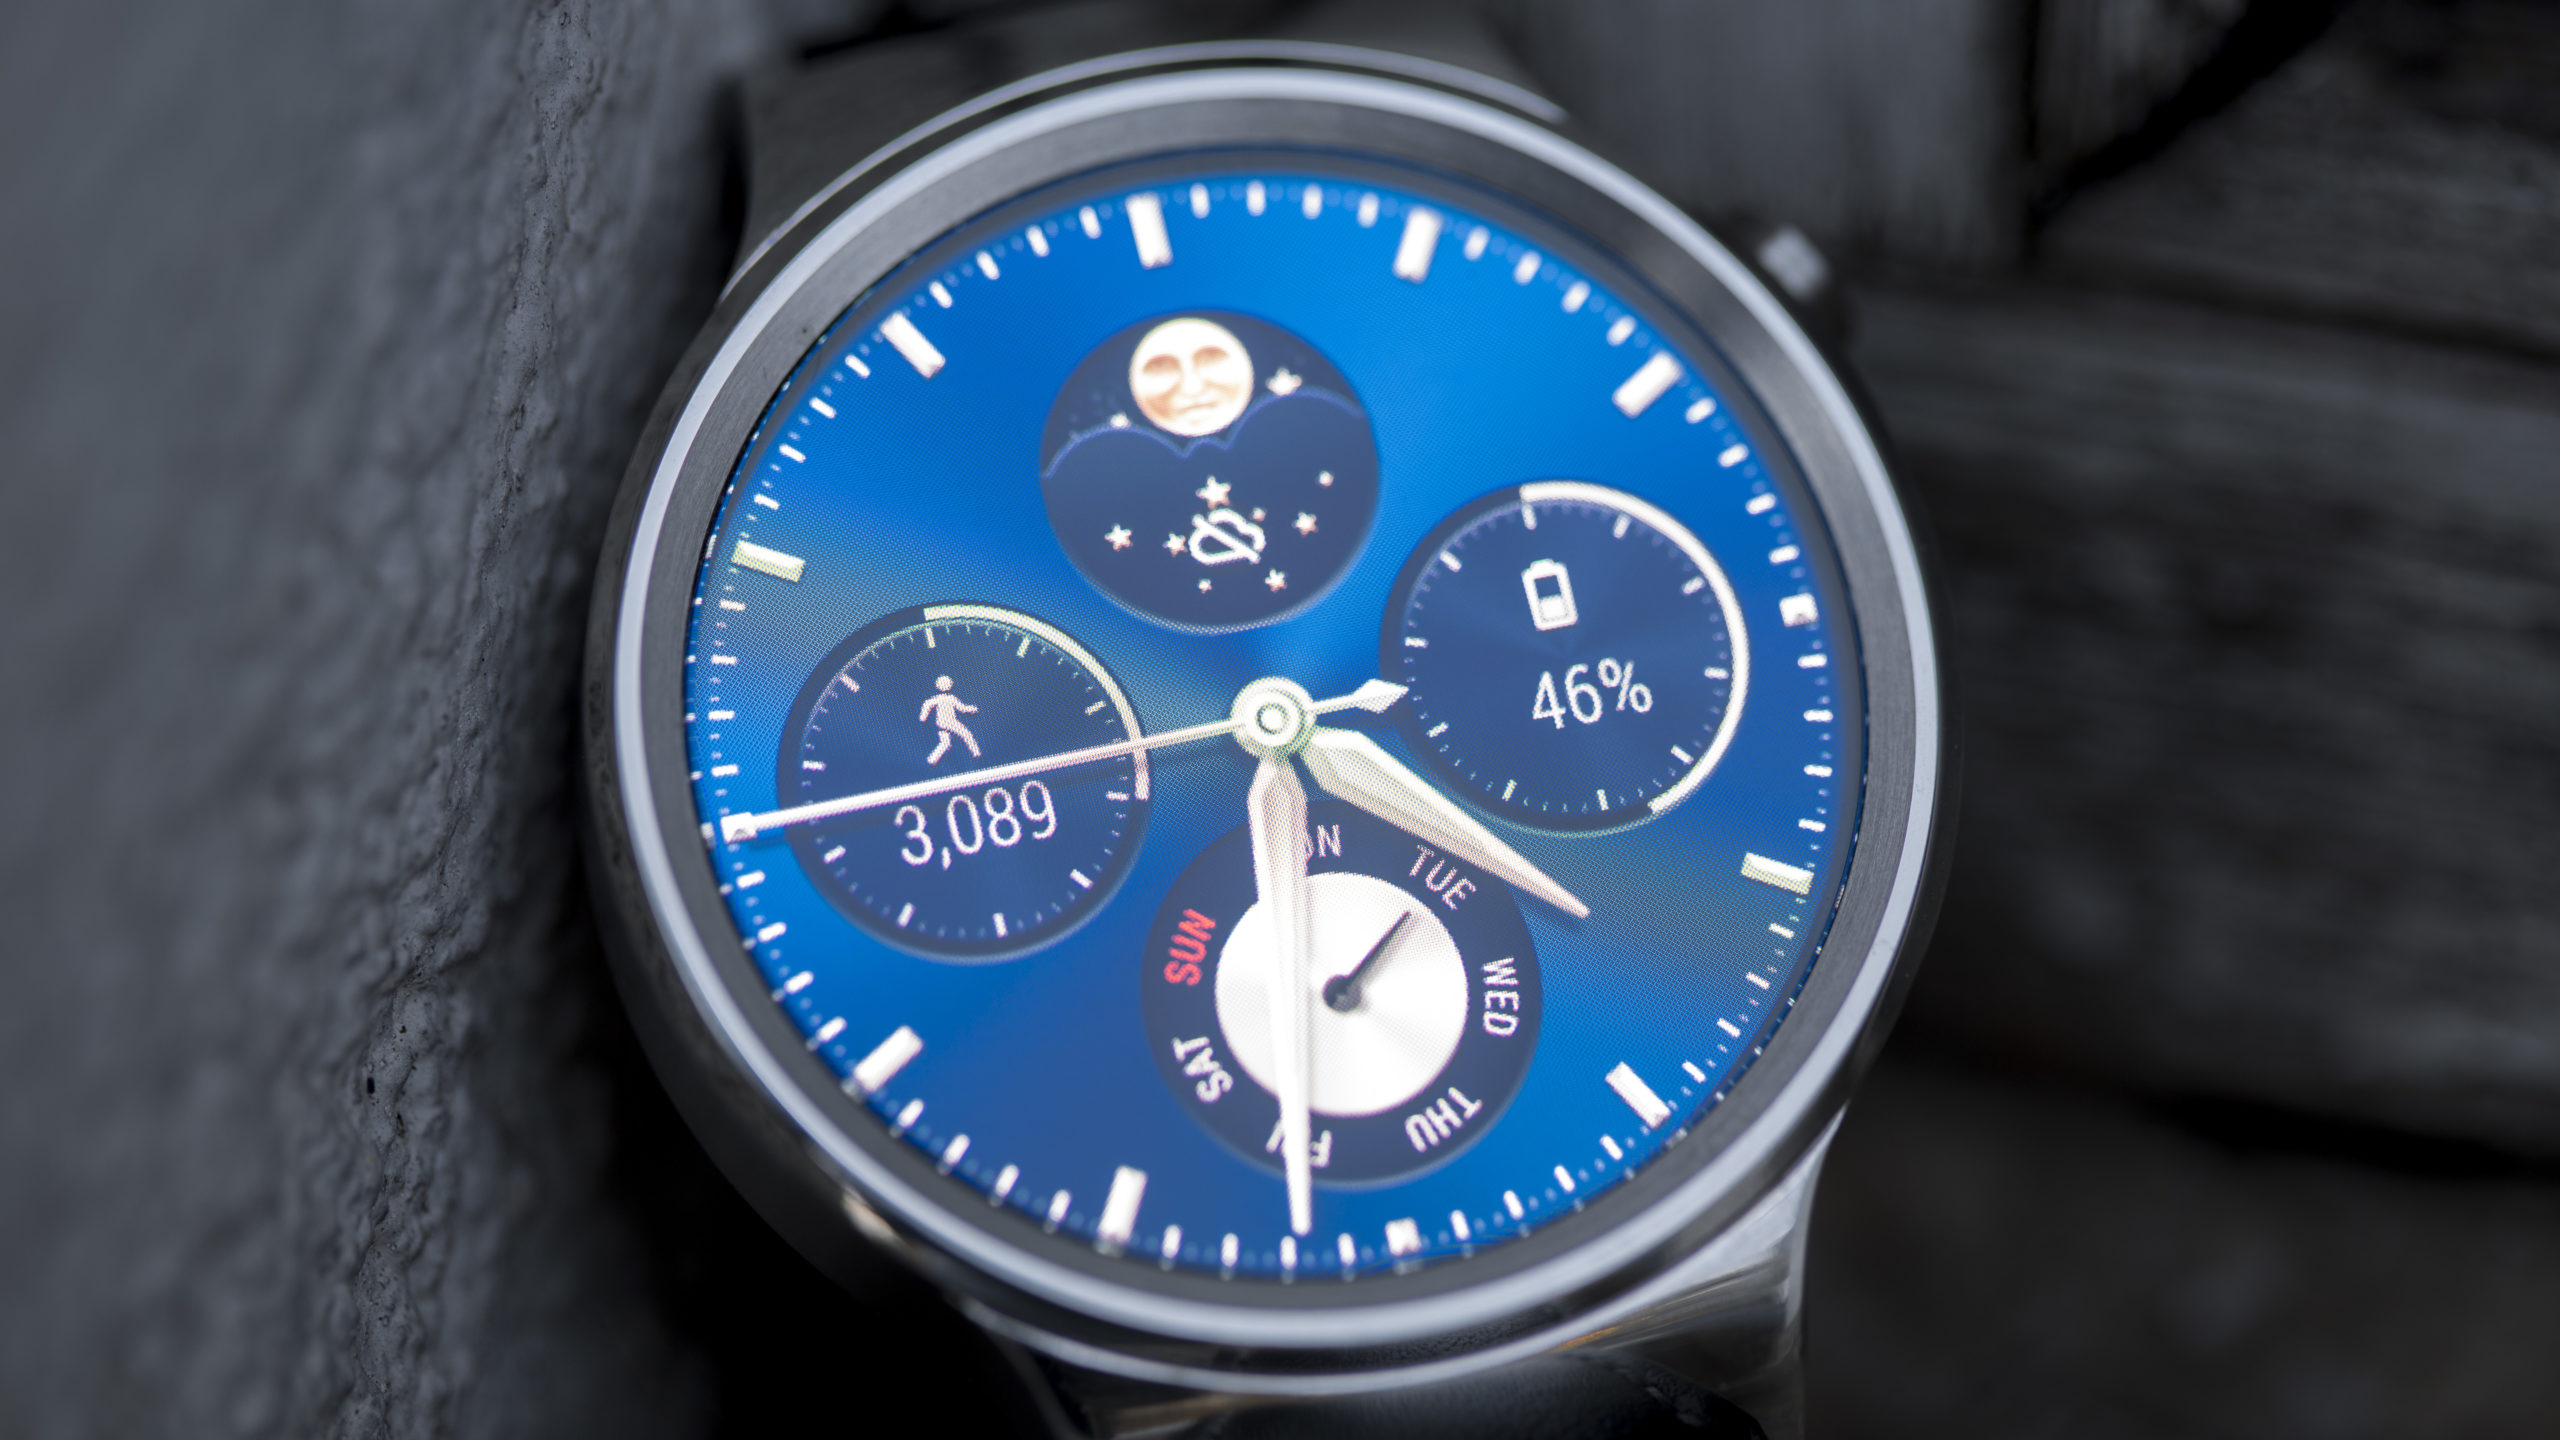 Recenzia Huawei Watch: Pôvodné inteligentné hodinky Huawei sú stále dobrým nákupom